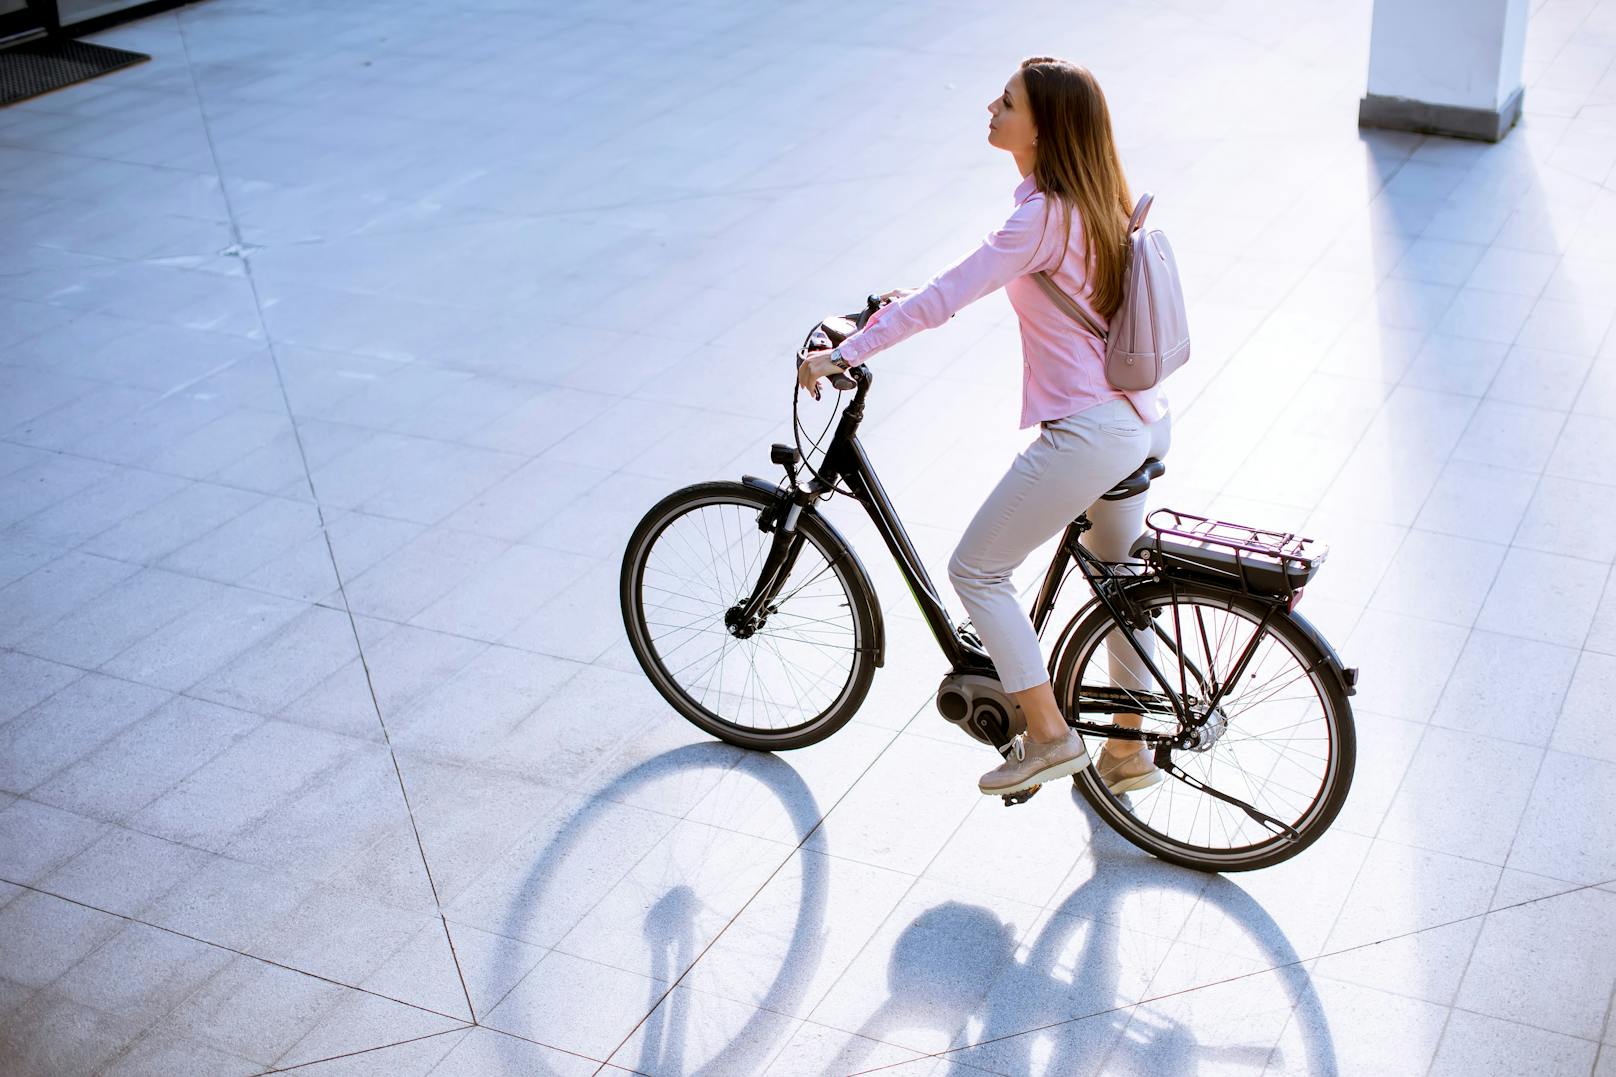 refurbed bietet ab sofort runderneuerte E-Bikes an.